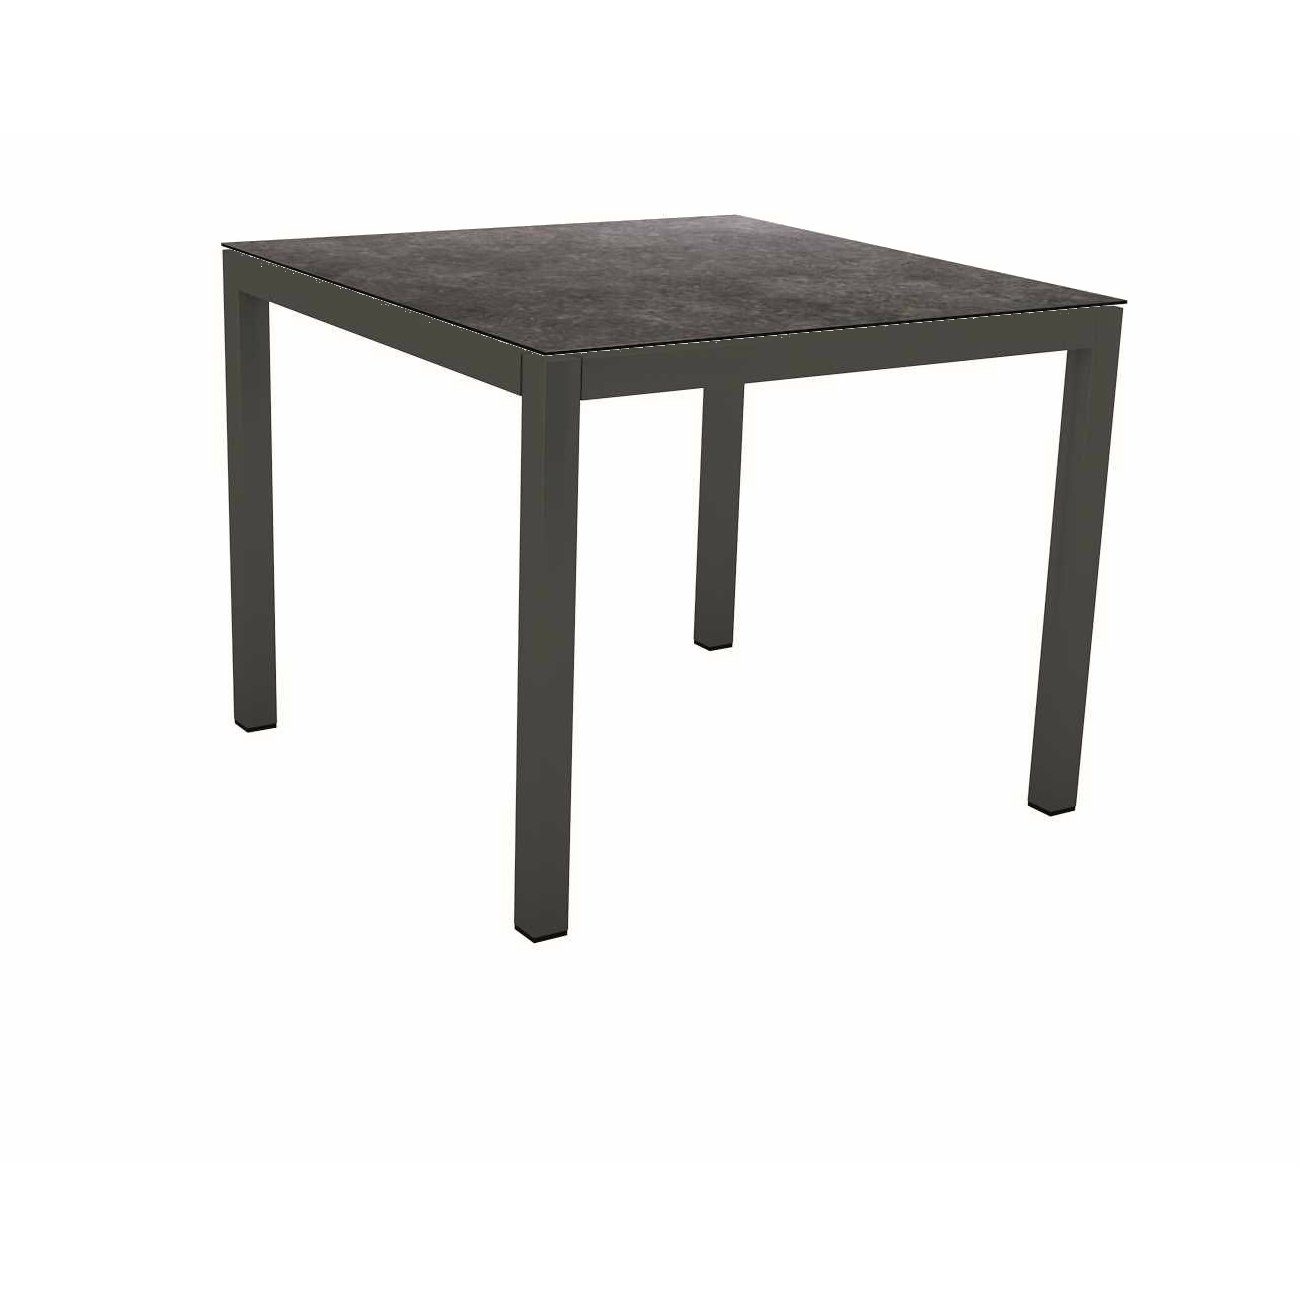 Stern Tischsystem Gartentisch, Gestell Aluminium anthrazit, Tischplatte HPL Vintage grau, Maße: 80x80 cm